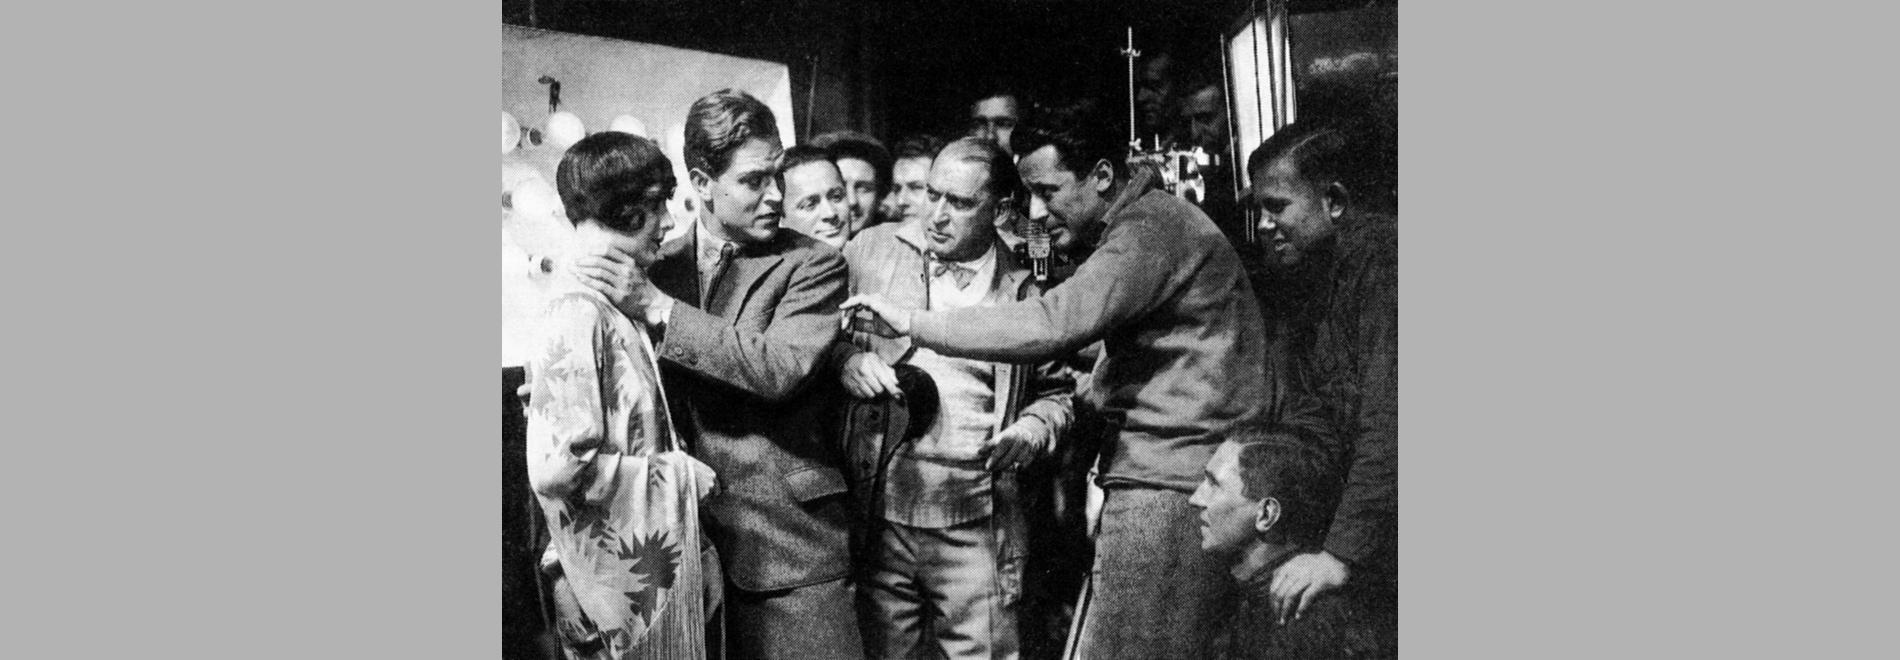 El cinema de Weimar: somnis i malsons